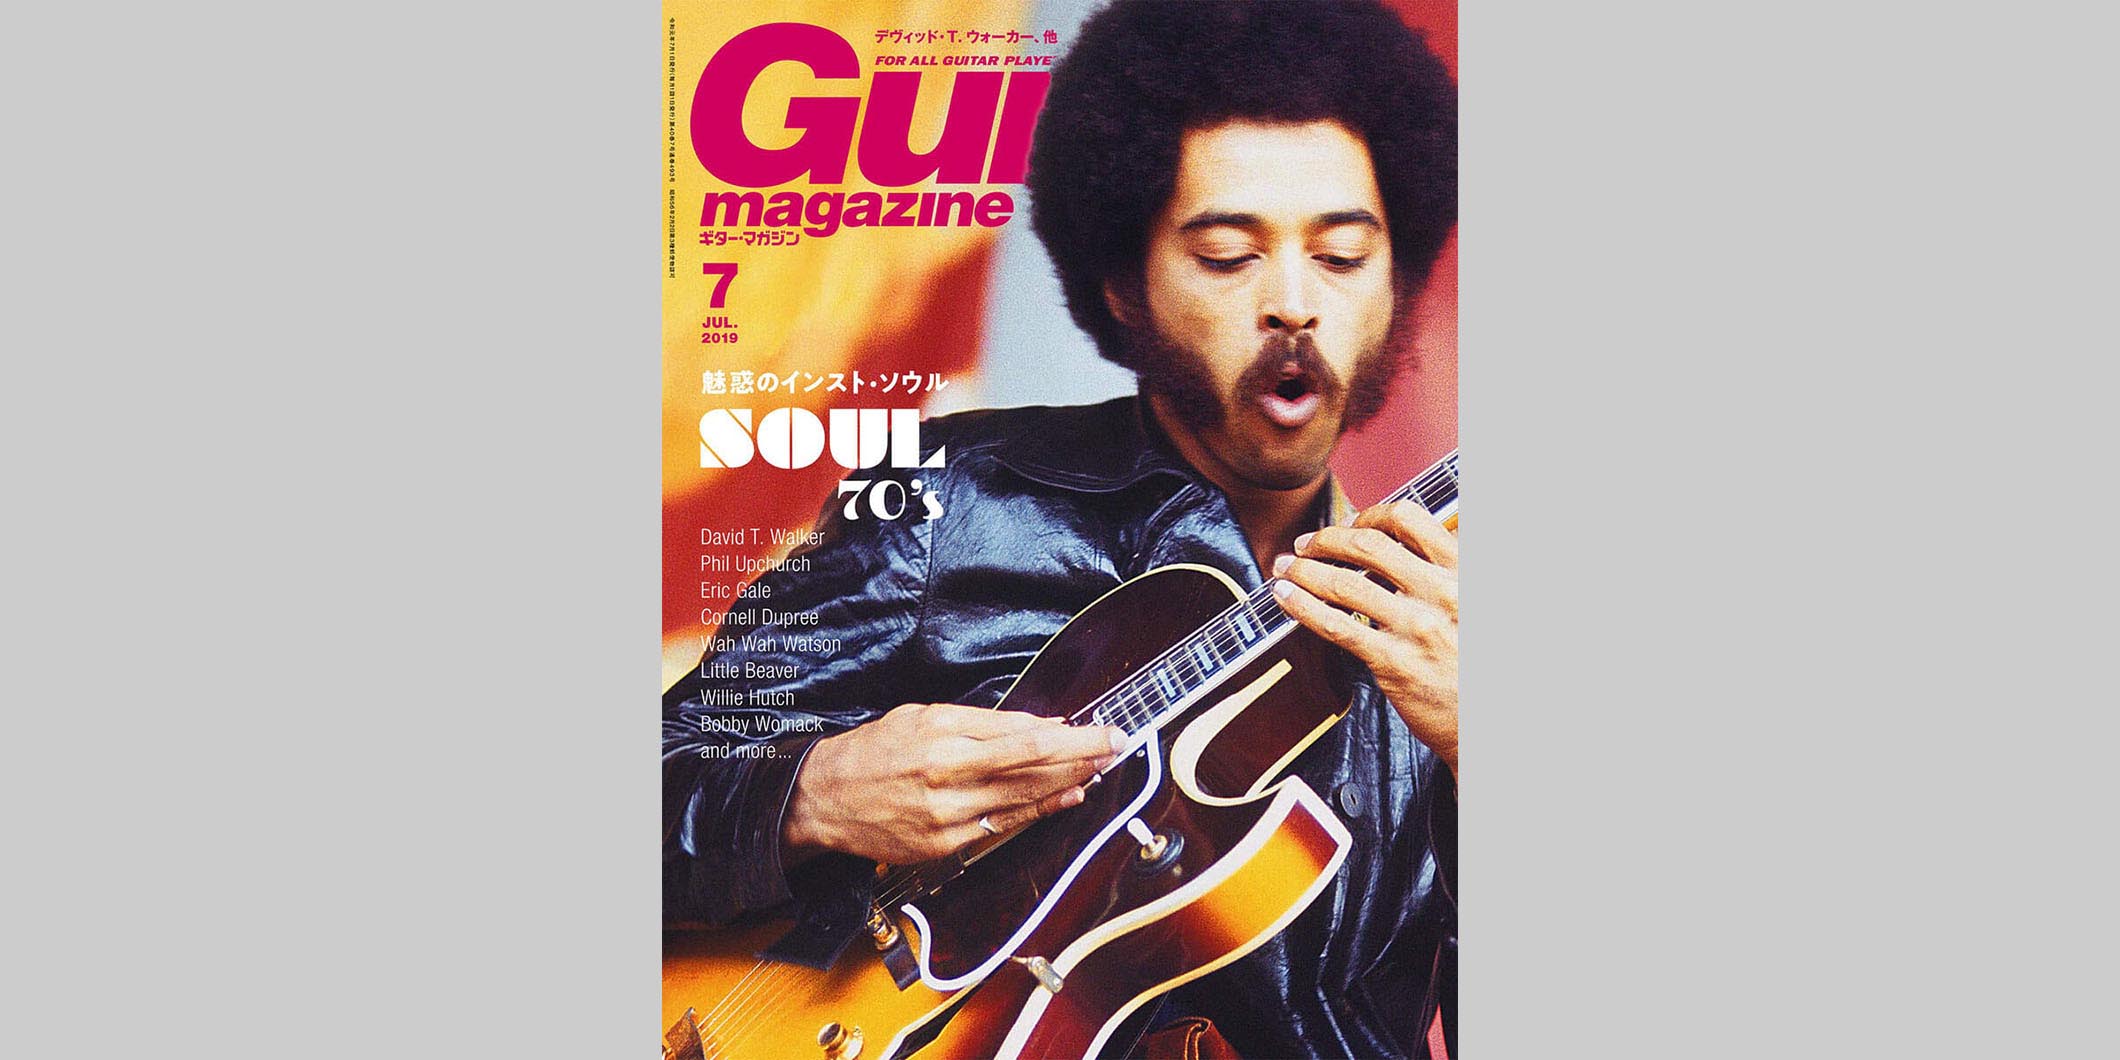 ギター・マガジン2019年7月号　表紙：デヴィッド・T.ウォーカー